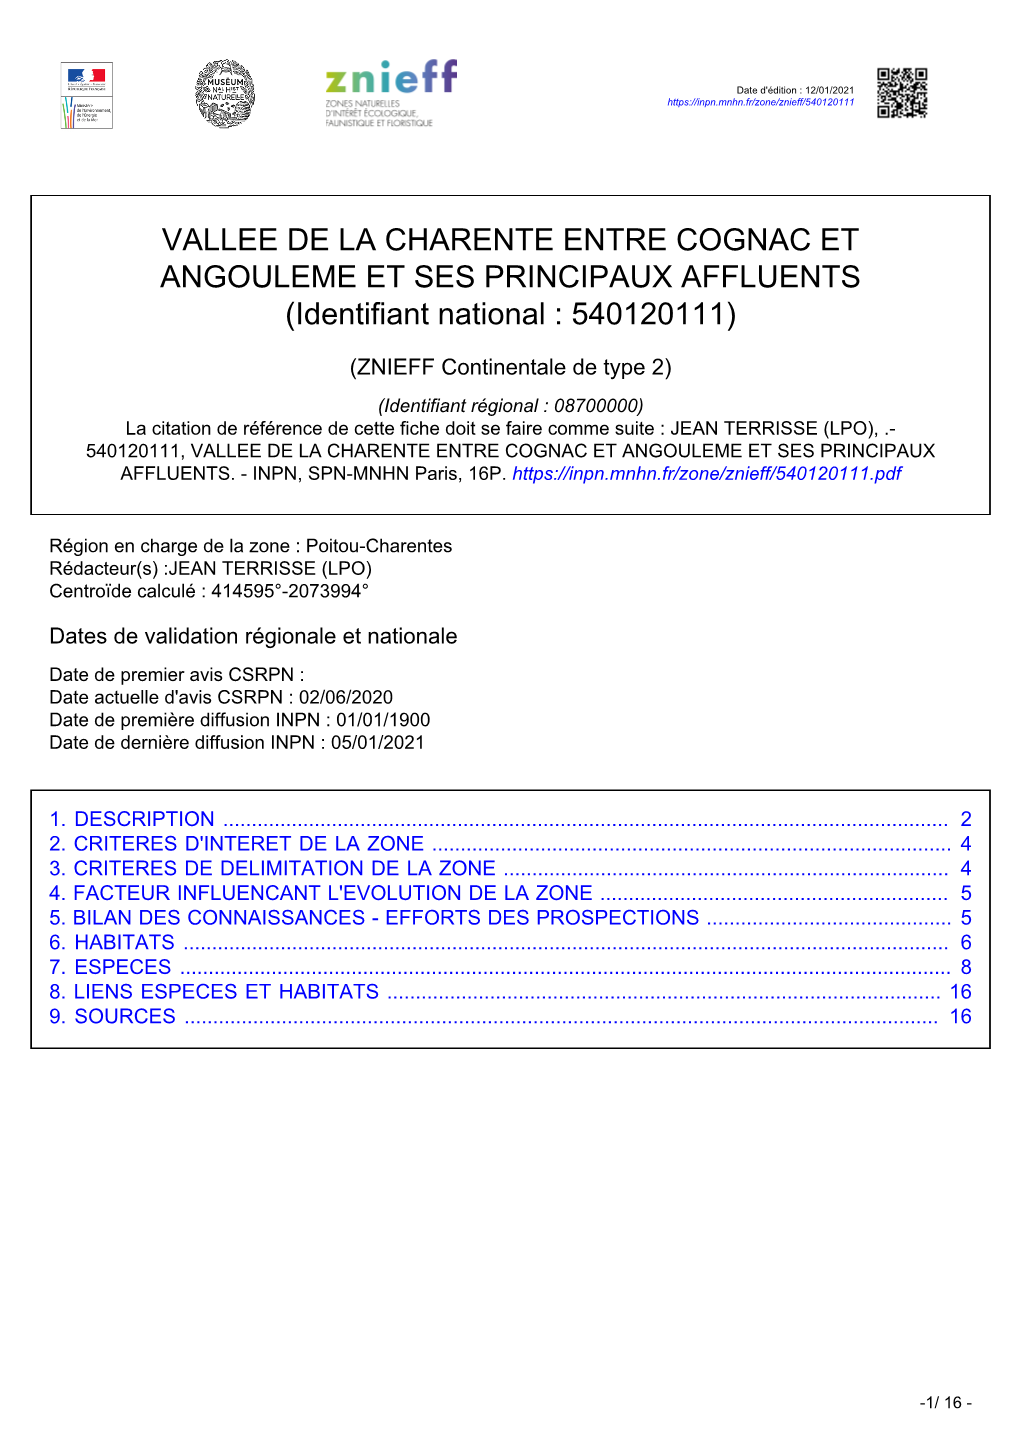 VALLEE DE LA CHARENTE ENTRE COGNAC ET ANGOULEME ET SES PRINCIPAUX AFFLUENTS (Identifiant National : 540120111)